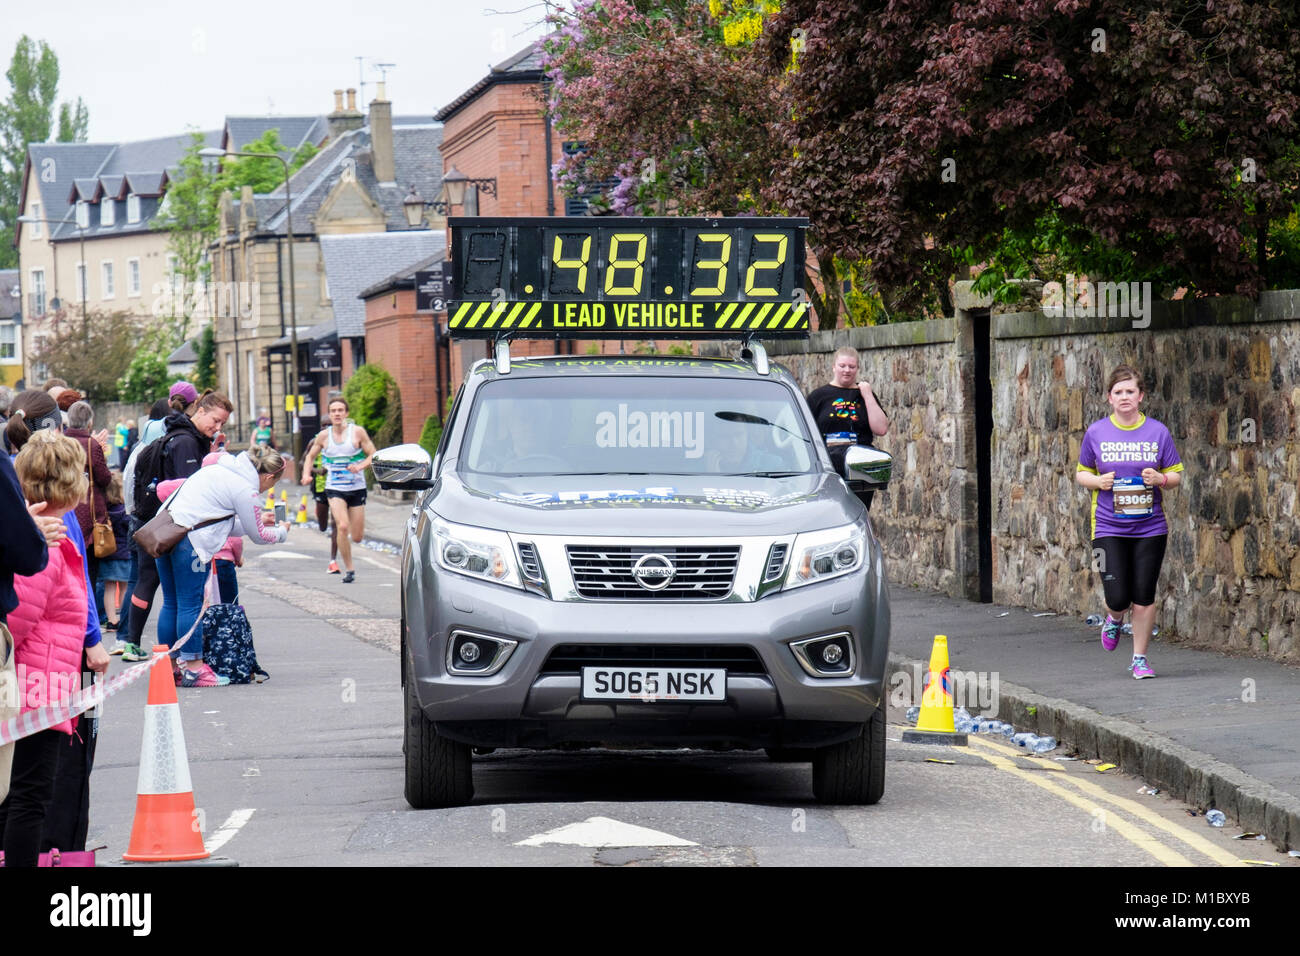 Führen Fahrzeug in Edinburgh Marathon 2016 mit Zuschauern am Straßenrand. Linkfield Straße, Musselburgh, Edinburgh, Schottland, Großbritannien, Großbritannien Stockfoto